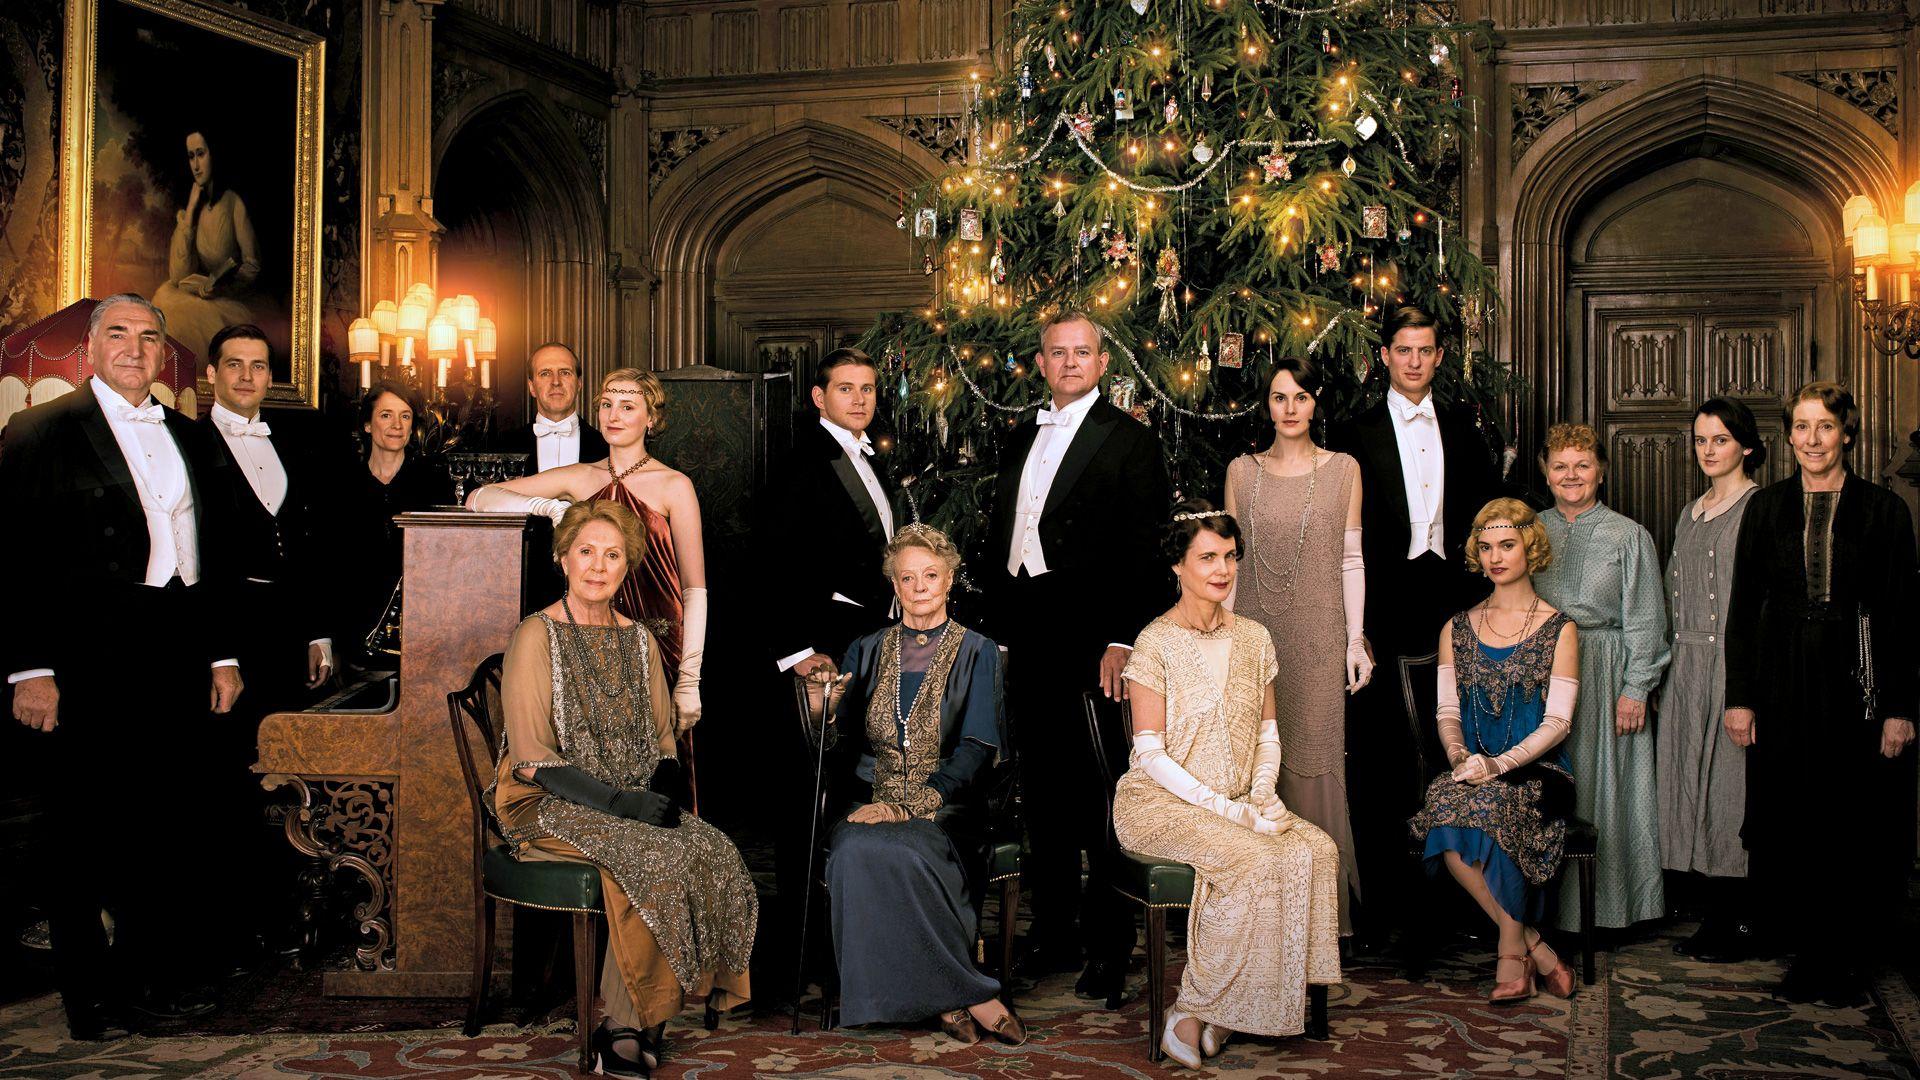 Downton Abbey Season 5: Viewers Guide to the Season. Season 5